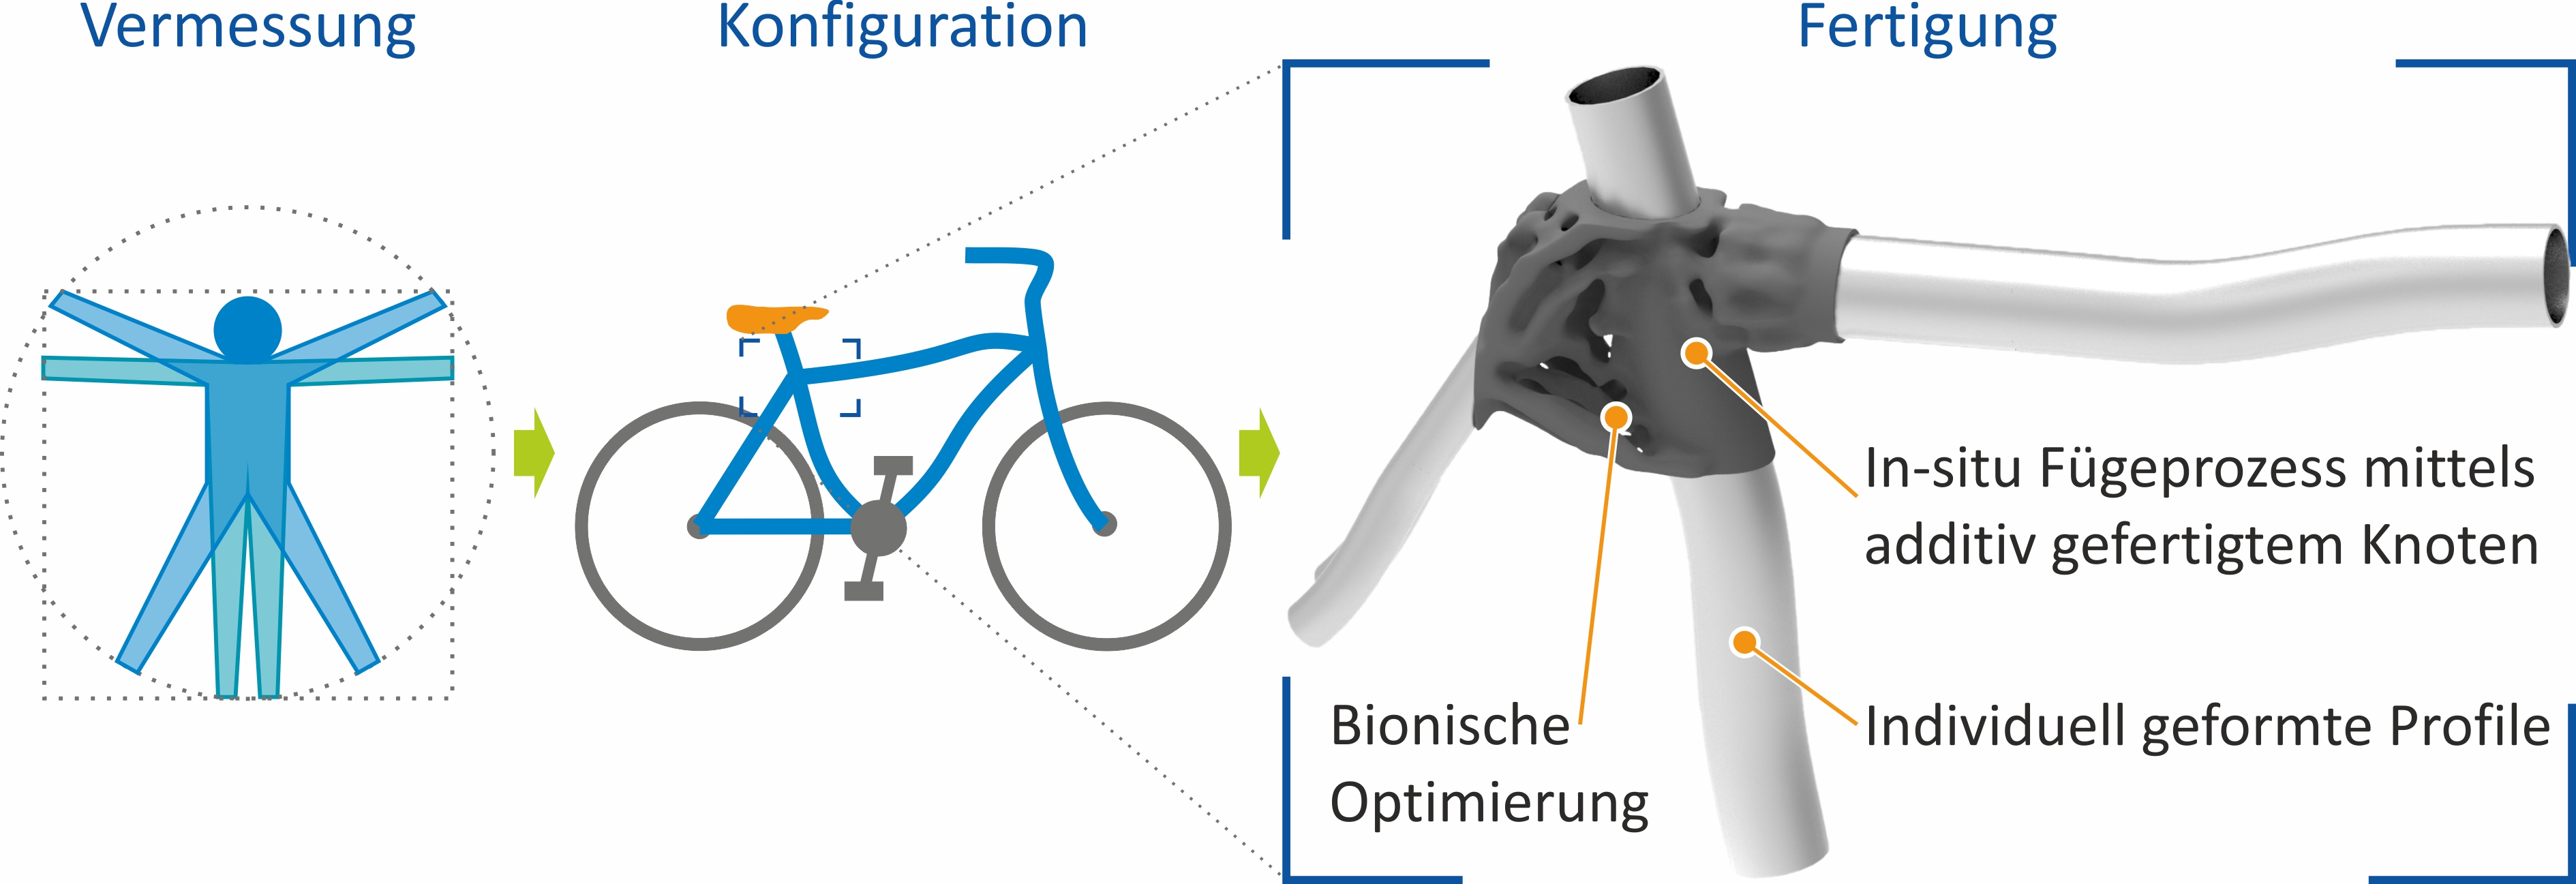 Fertigung eines kundenindividuellen Fahrrads in Leichtbauweise Quelle: Prof. Dr. Jörg Kolbe